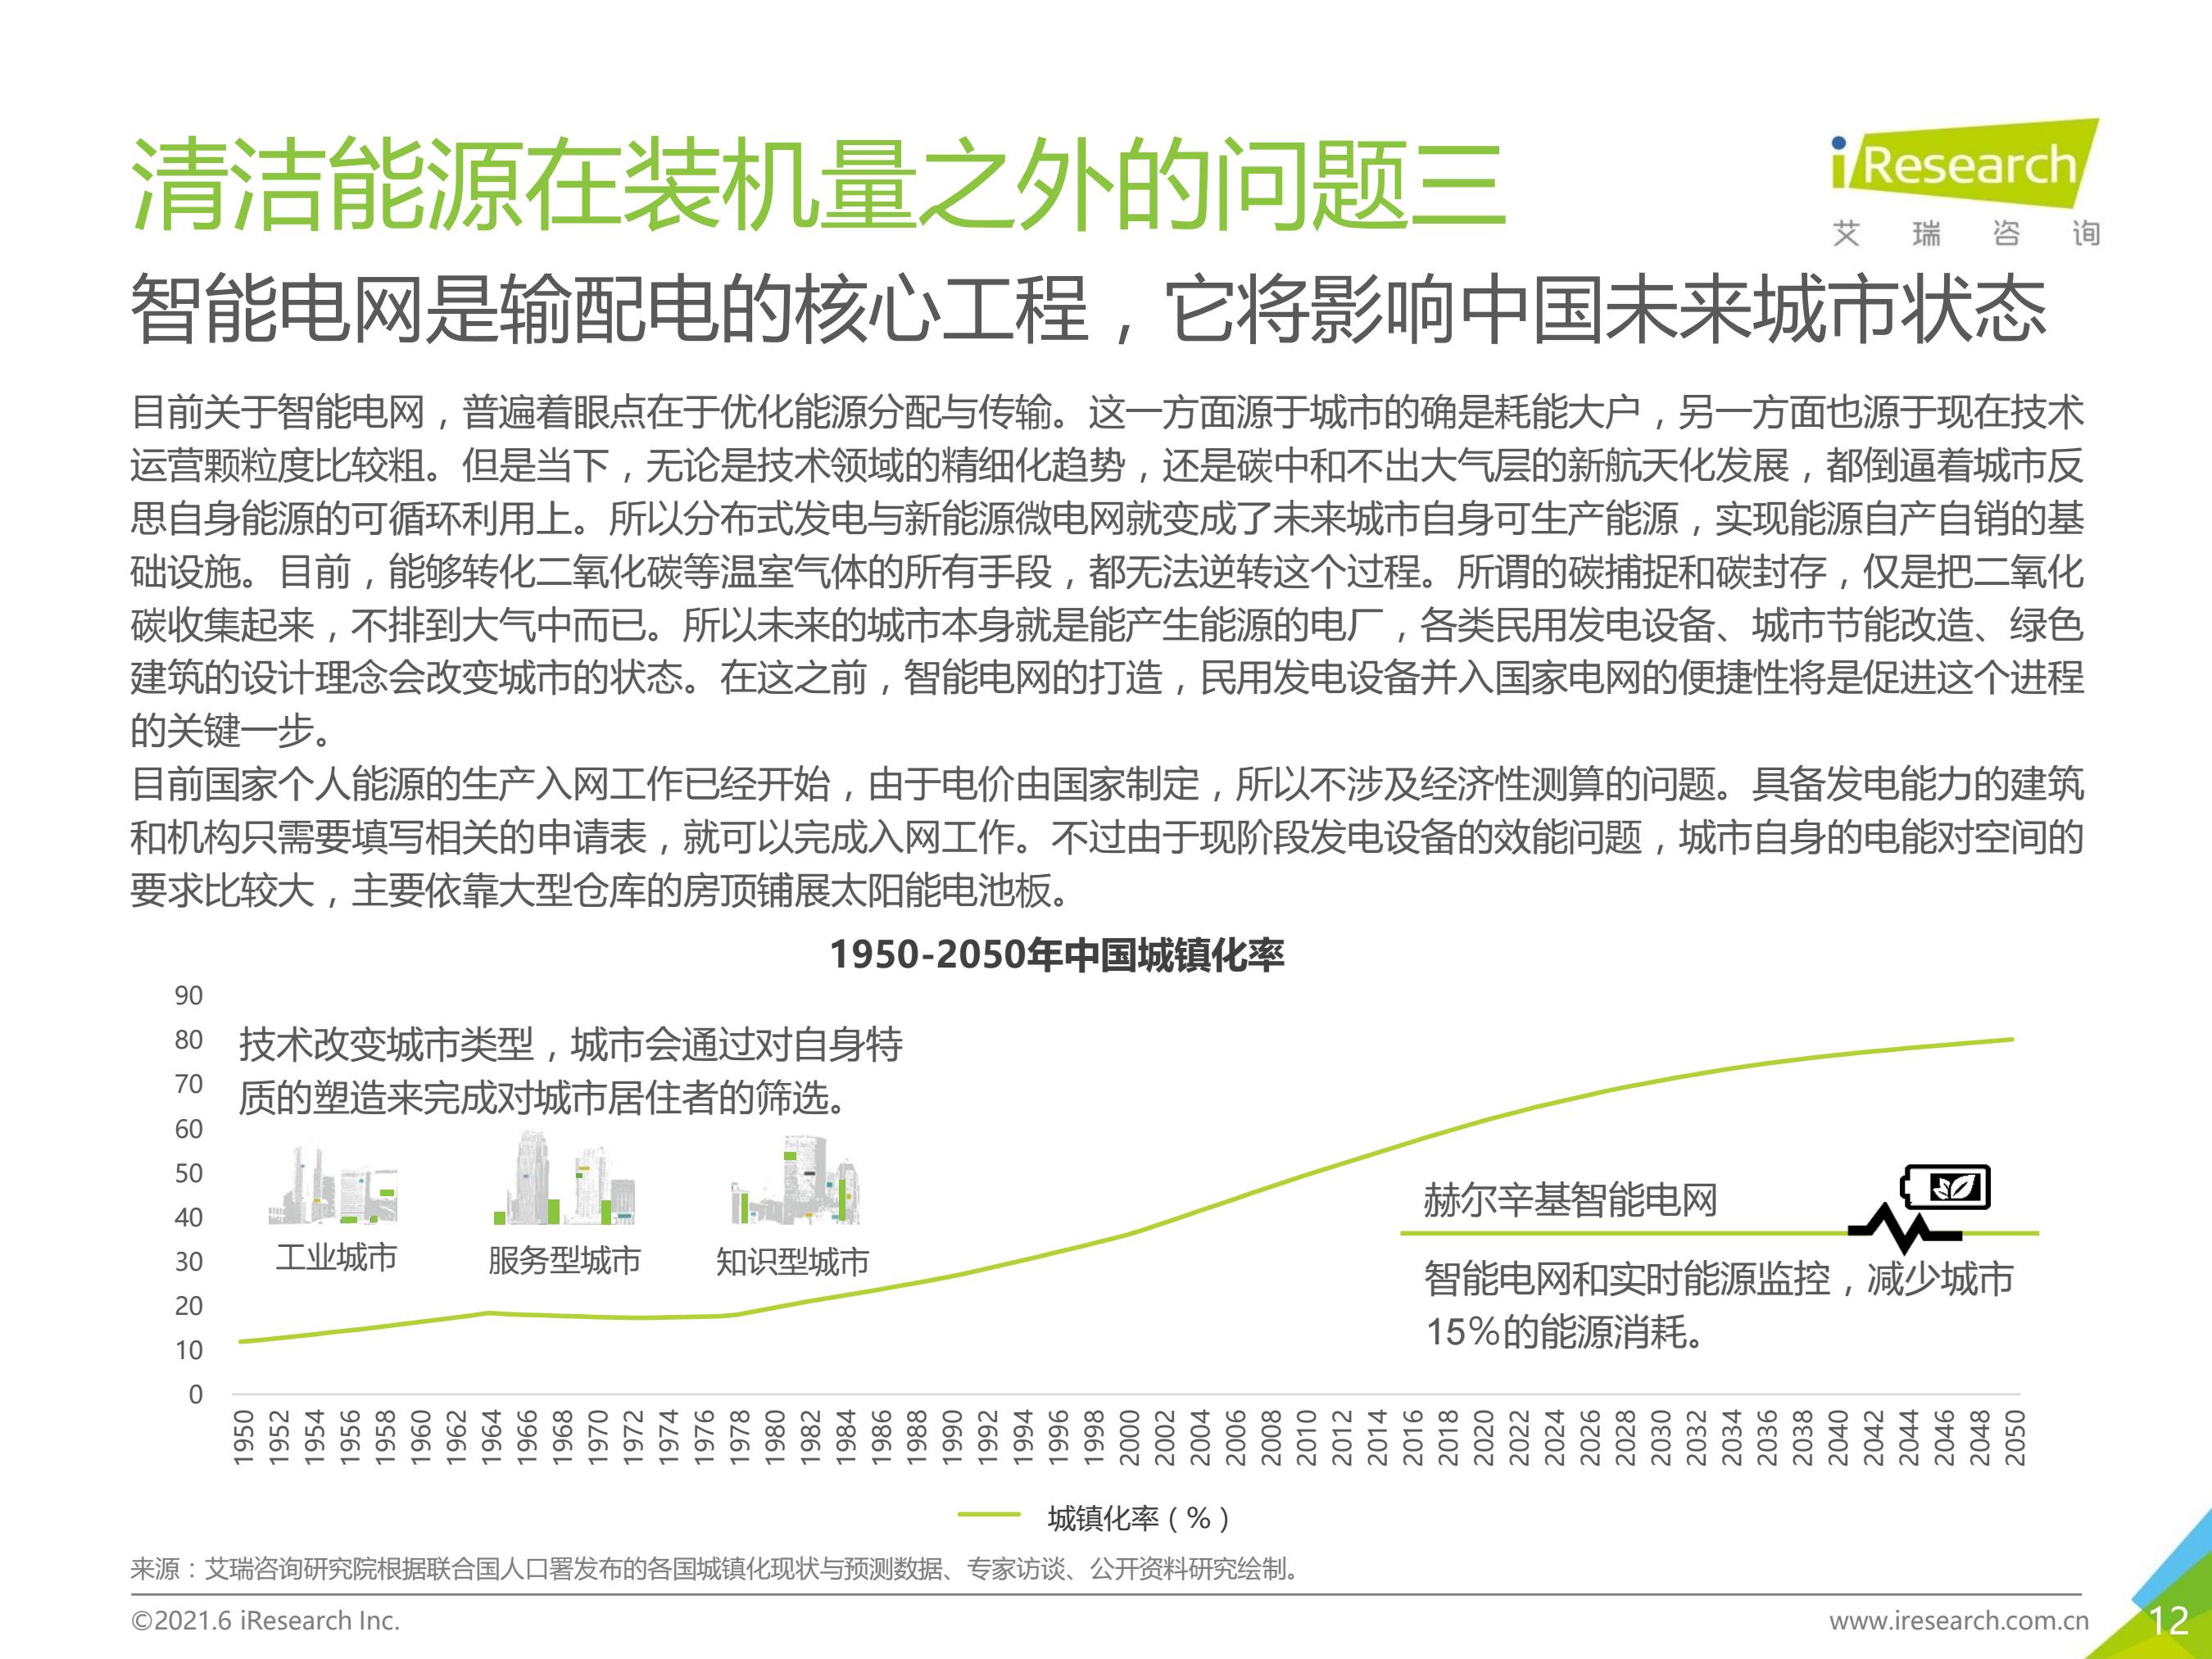 古太古代—2021年中国碳中和行业研究报告